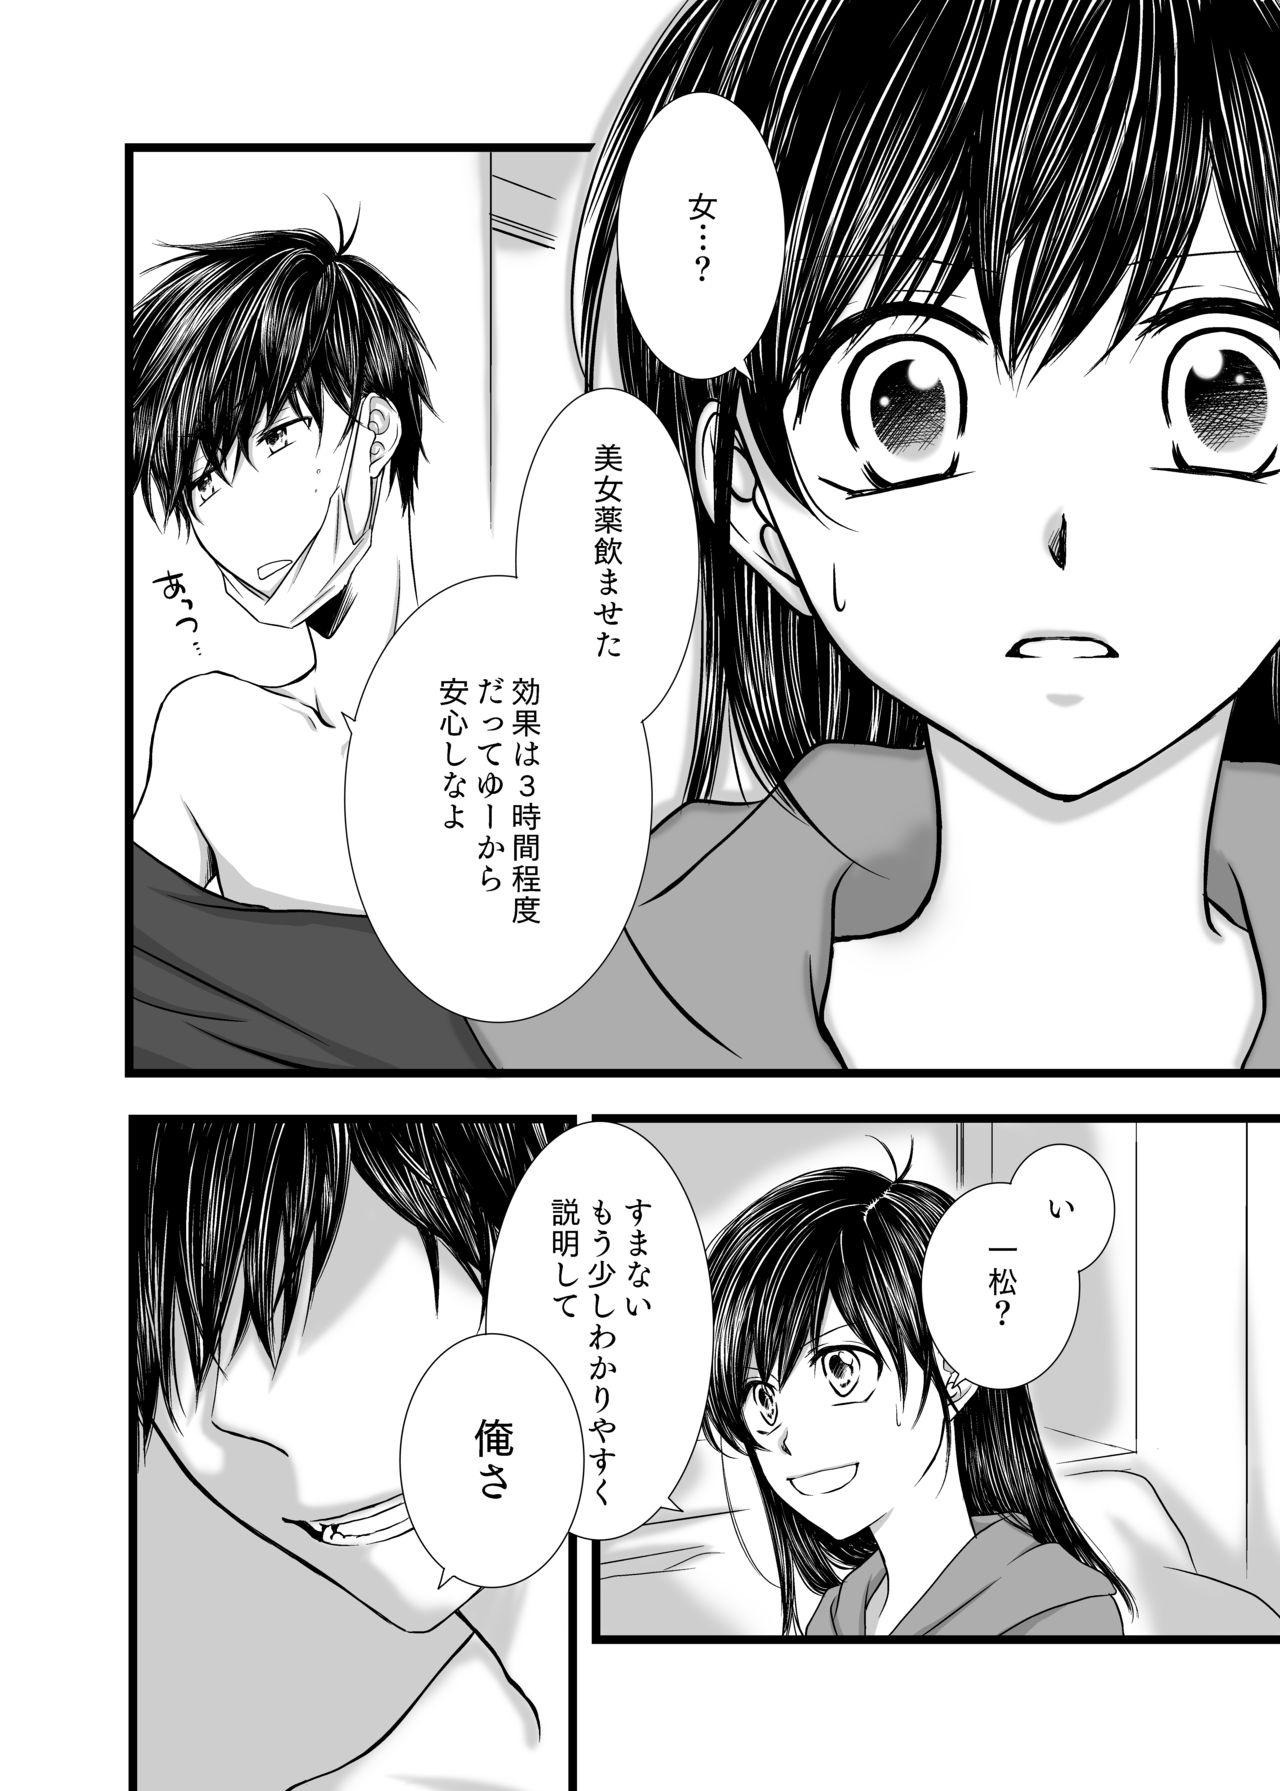 Fresh 愛のカタチは。 - Osomatsu-san Gay Fetish - Page 7